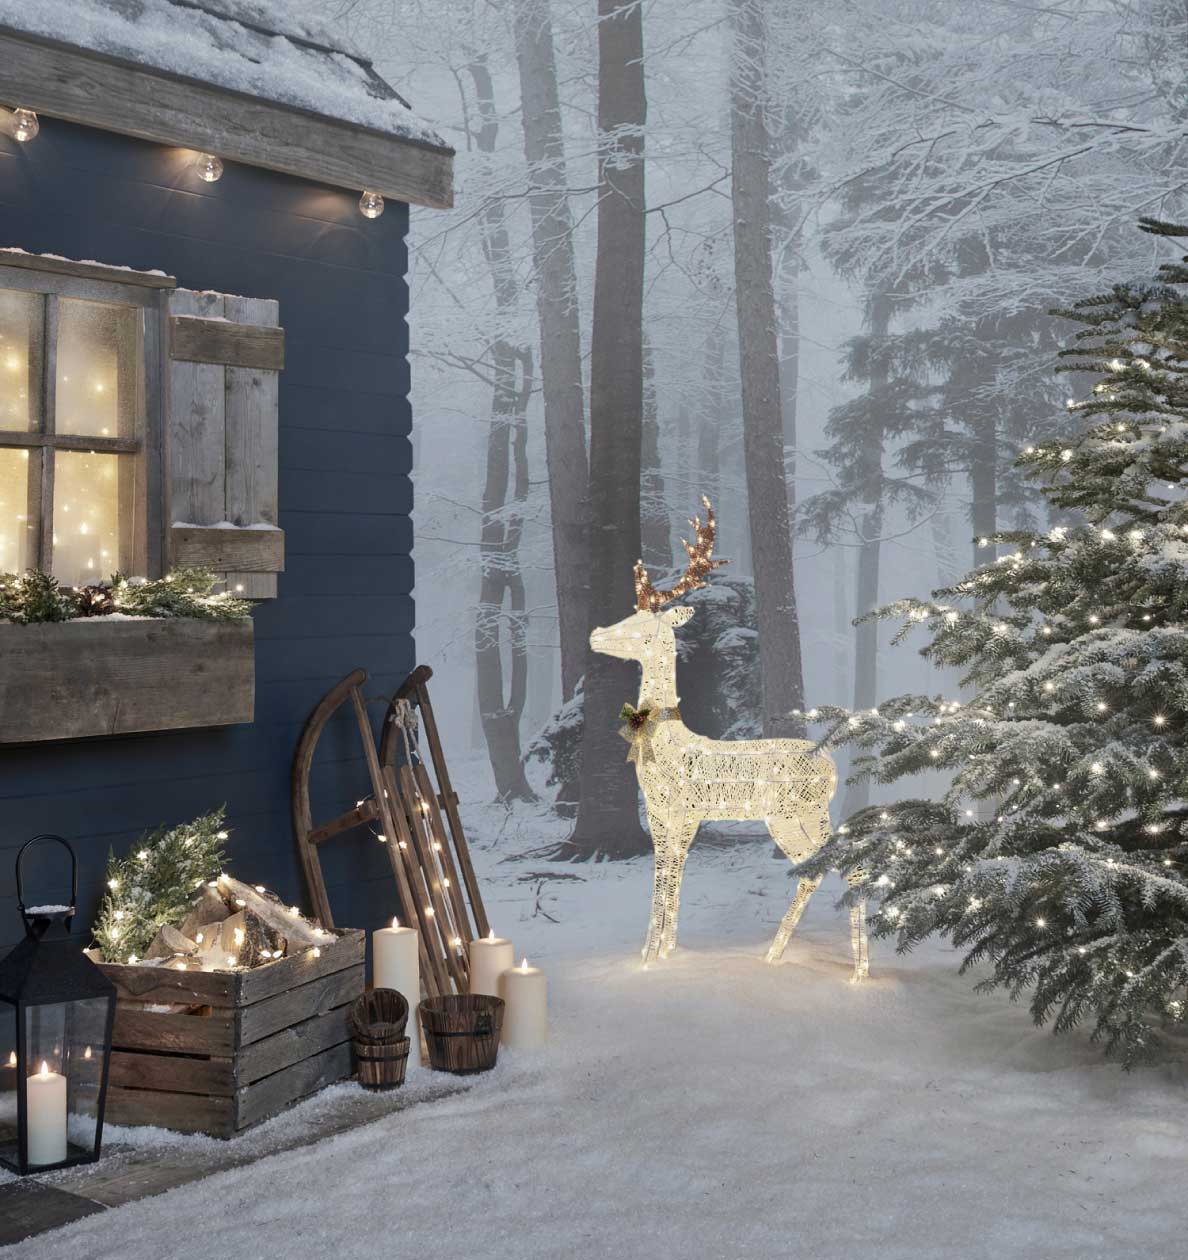 LED Rentier im Schnee zwischen einer beleuchteten Holzhütte und einem beleuchteten Tannenbaum